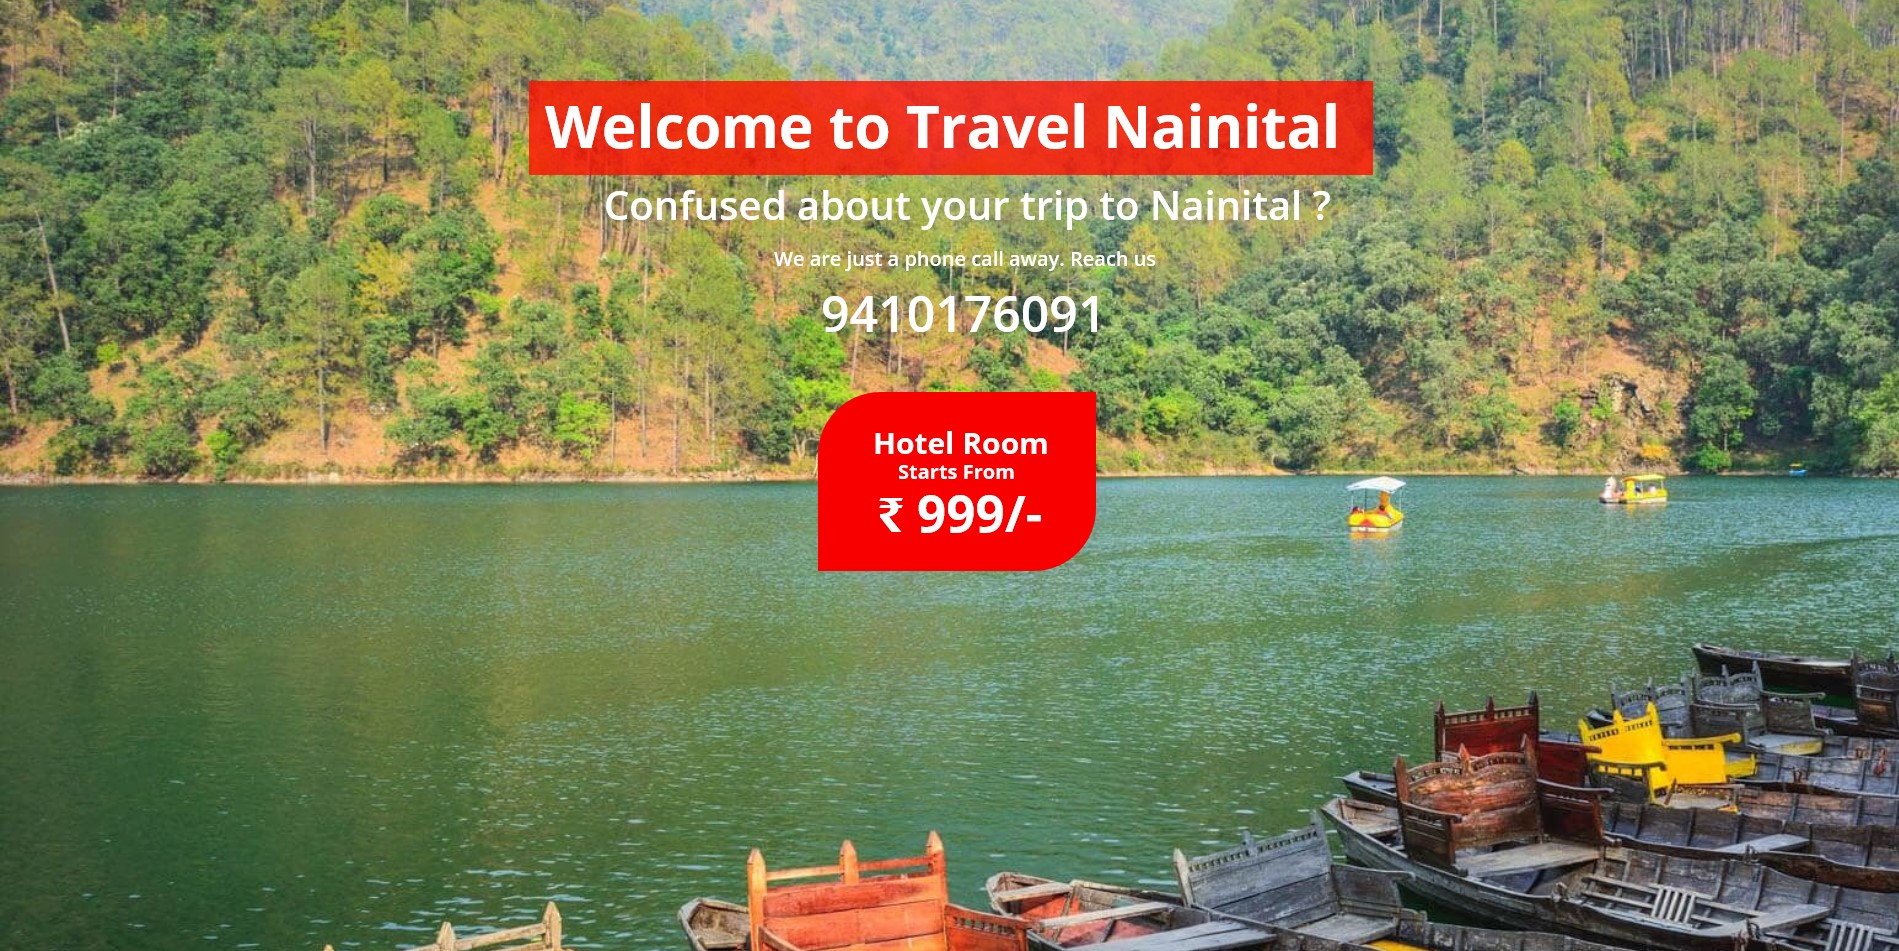 Travel Nainital